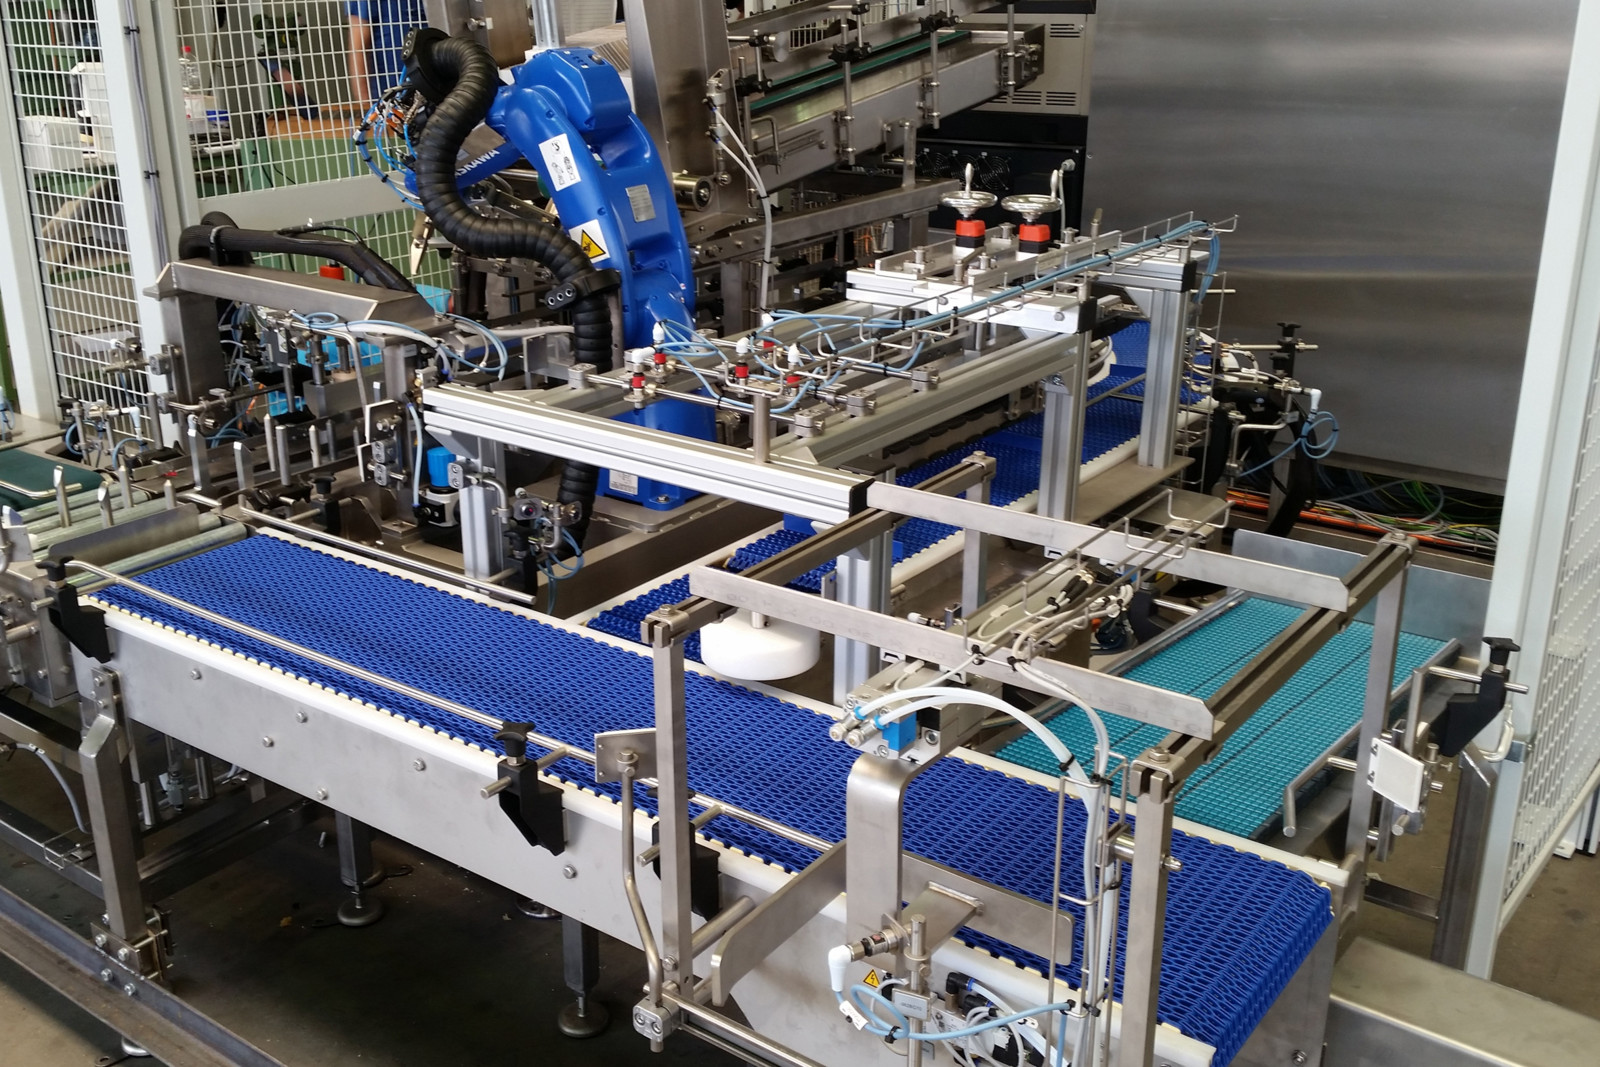 Die Dalex Maschinenbau GmbH (ehemals Augenstein) ist Spezialist für leistungsstarke Standard- und Sonderlösungen rund um die Prozessautomatisierung für die unterschiedlichsten Schlüsselbranchen.